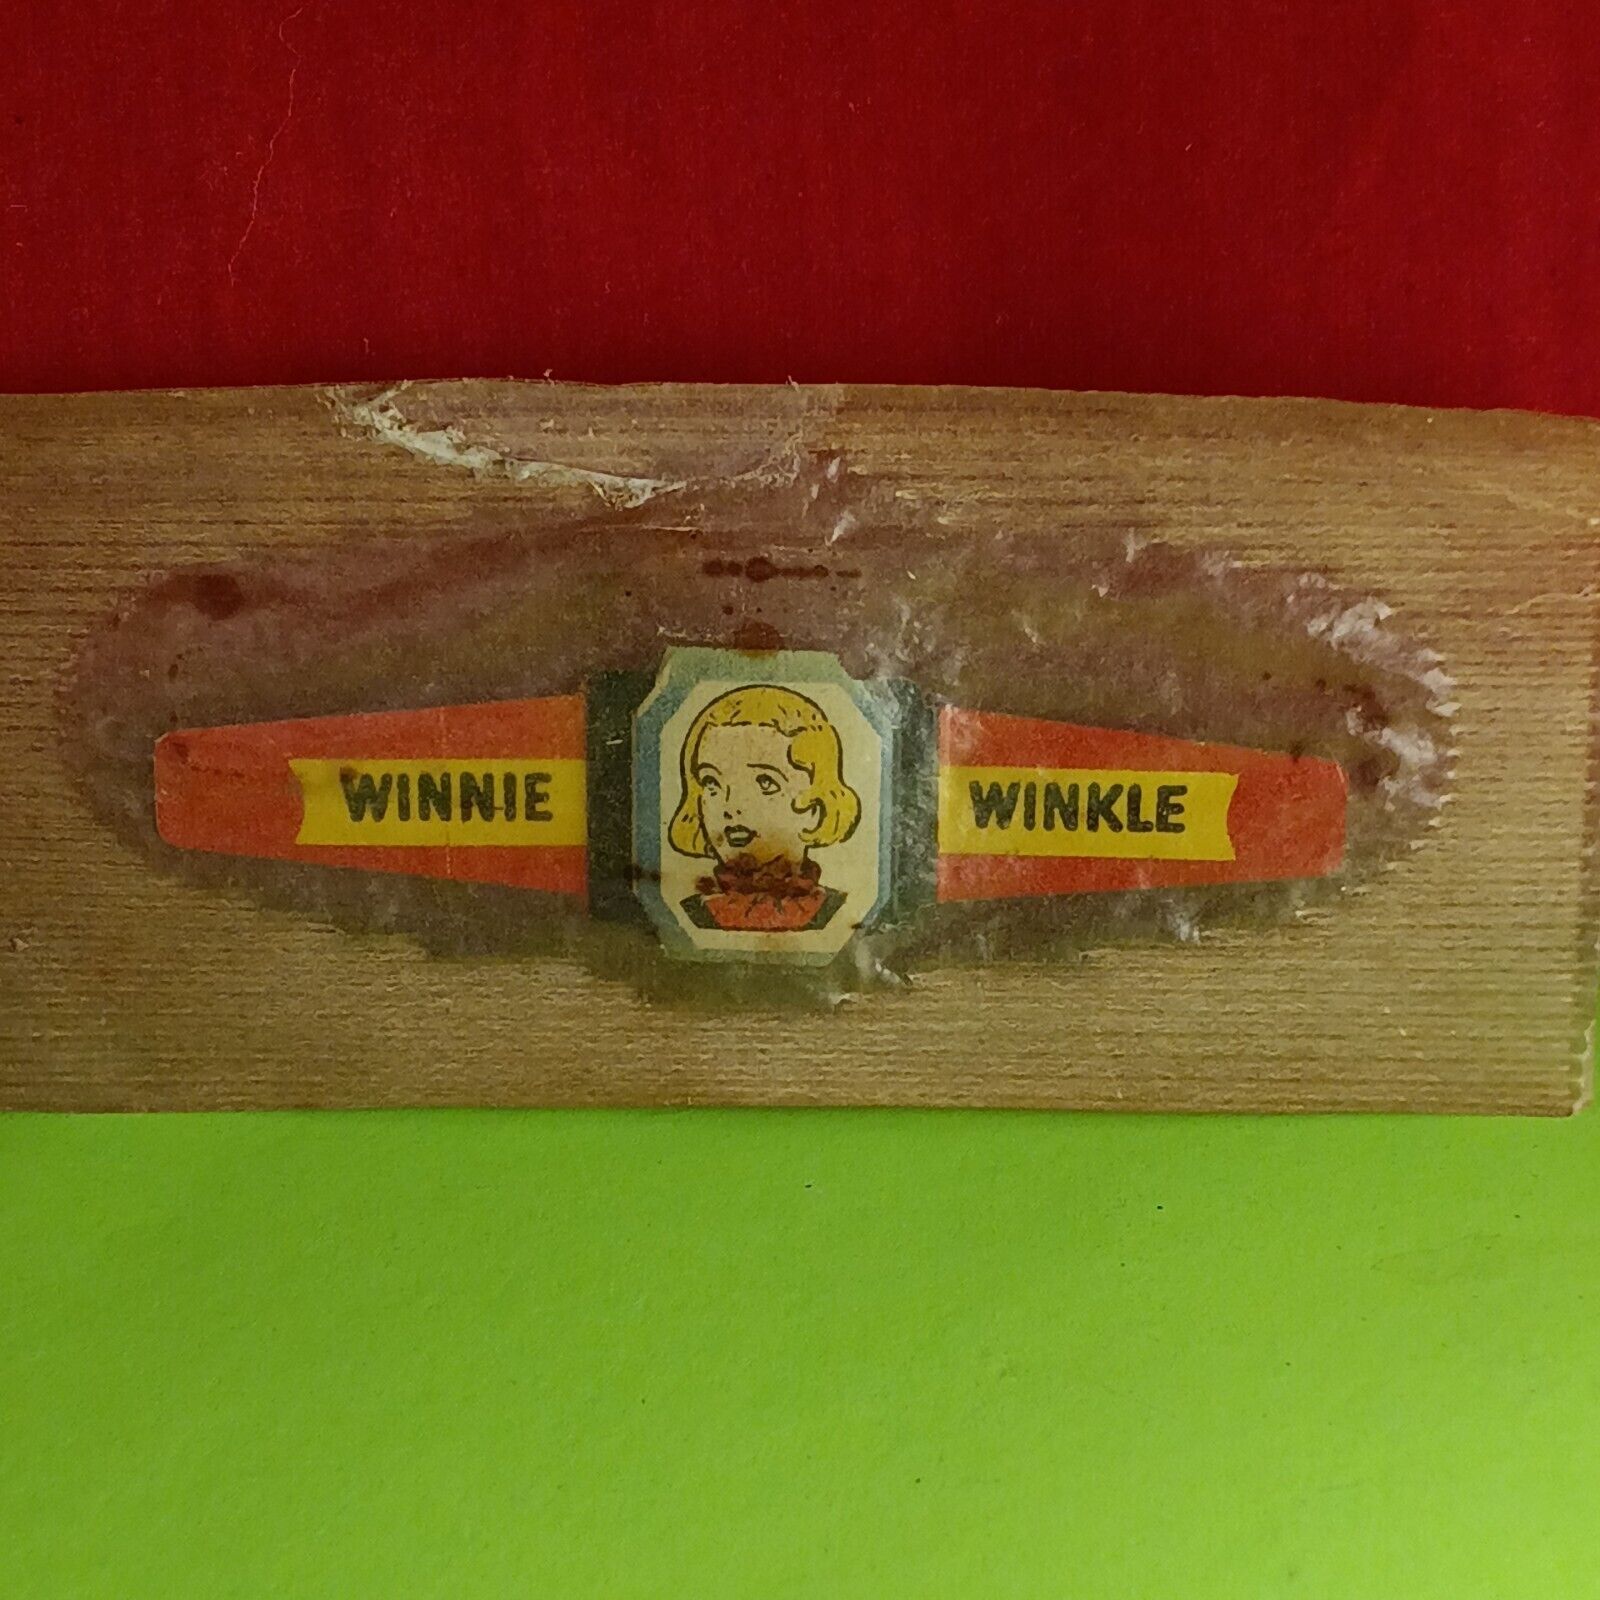 1948 Winnie Winkle Metal Ring - Post Raisin Bran Cereal